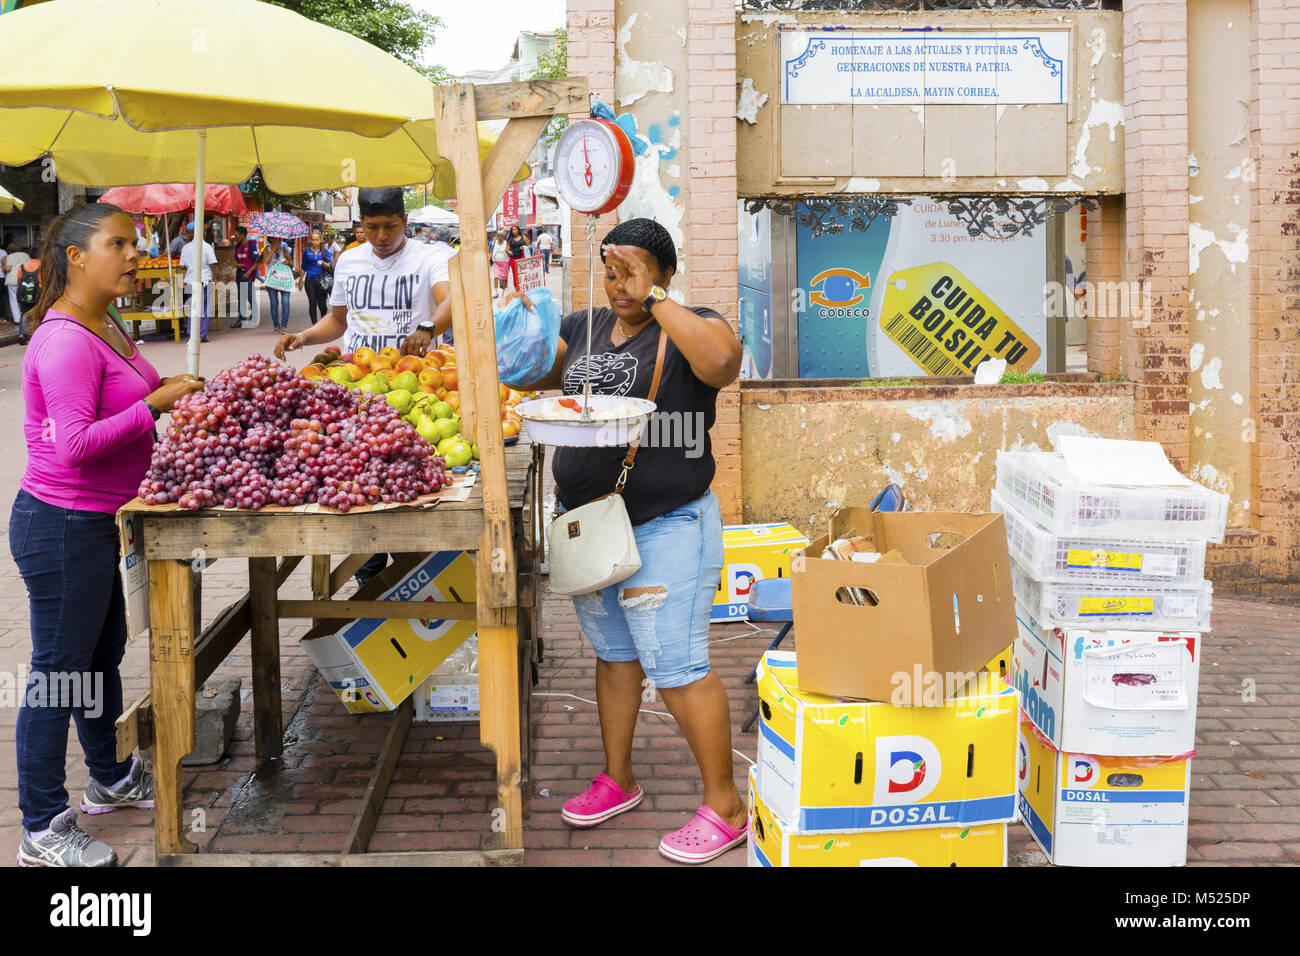 Einkäufe bei Obst und Veranstaltungsräume in der Avenida Central Panama City Stockfoto